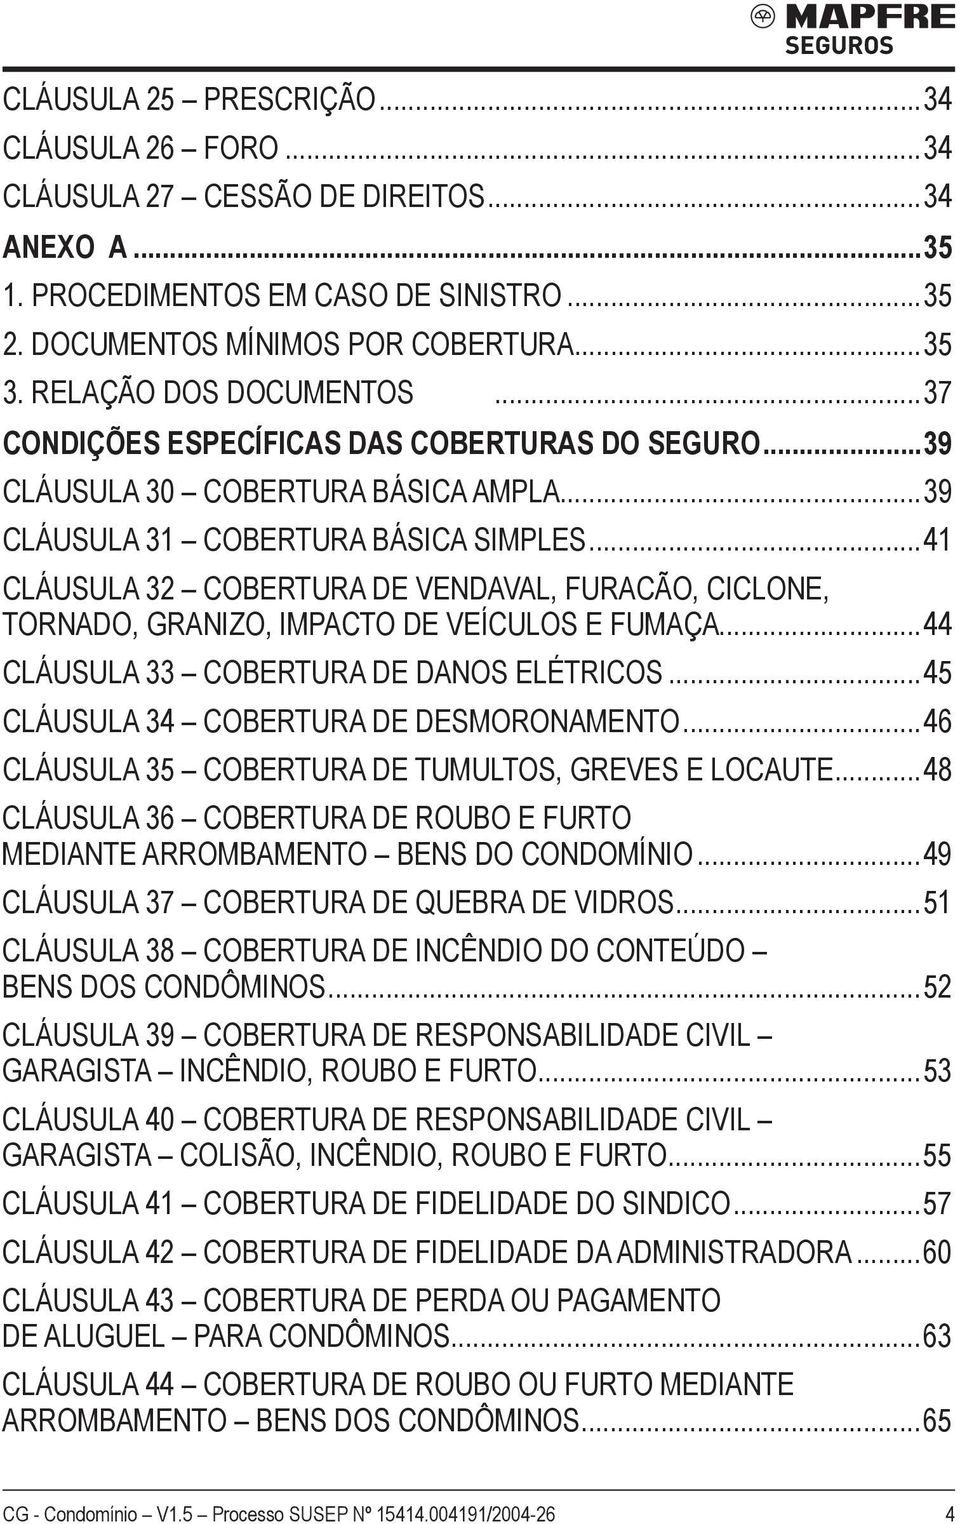 ..41 Cláusula 32 COBERTURA DE VENDAVAL, FURACÃO, CICLONE, TORNADO, GRANIZO, IMPACTO DE VEÍCULOS E FUMAÇA...44 Cláusula 33 COBERTURA DE DANOS ELÉTRICOS...45 Cláusula 34 COBERTURA DE DESMORONAMENTO.